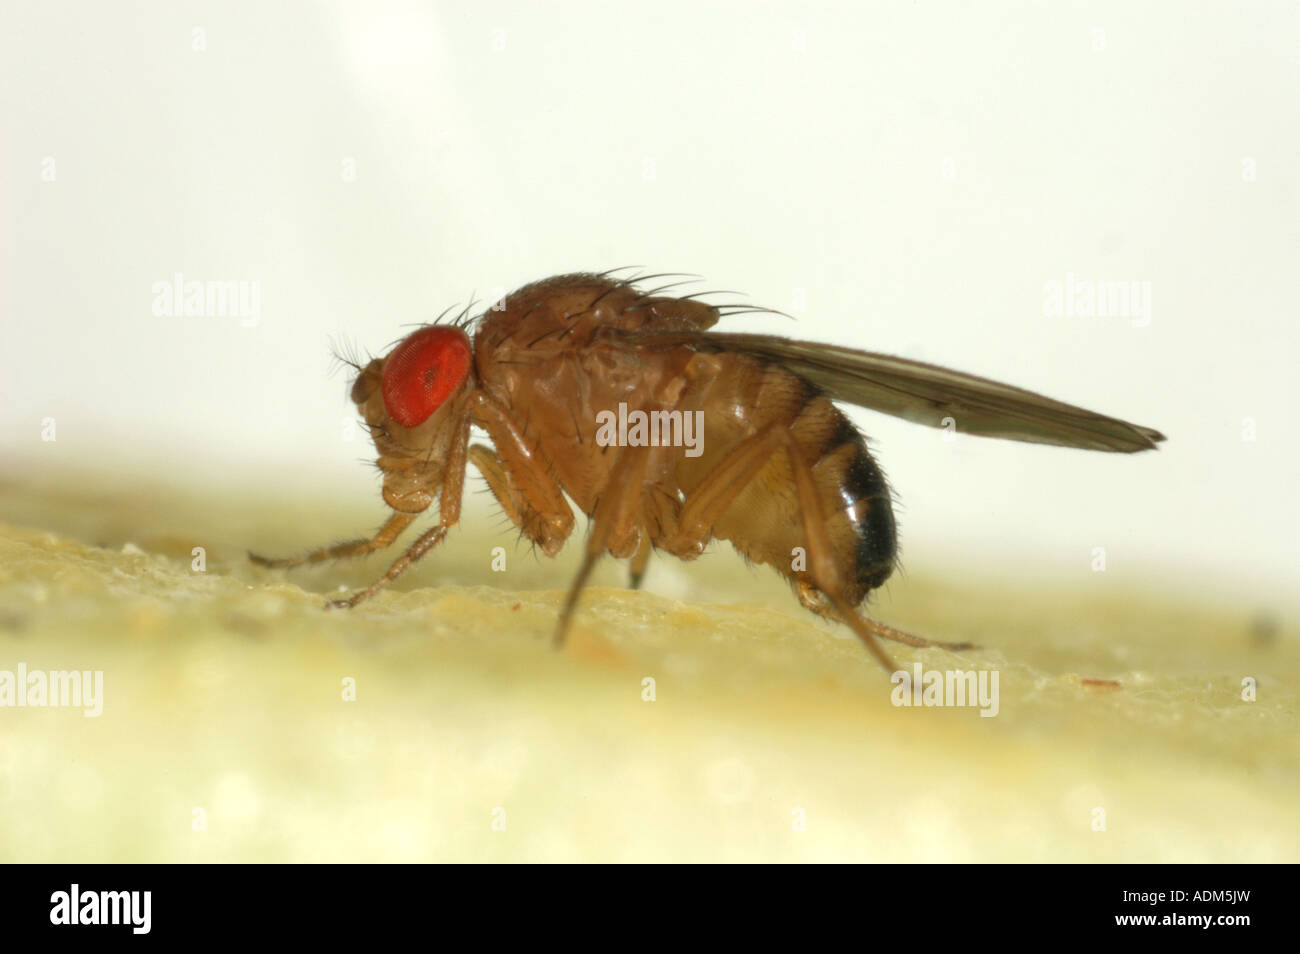 Nach Taufliege Drosophila melanogaster eine Gattung für Experimente verwendet wegen des schnellen Zucht Zyklus Stockfoto